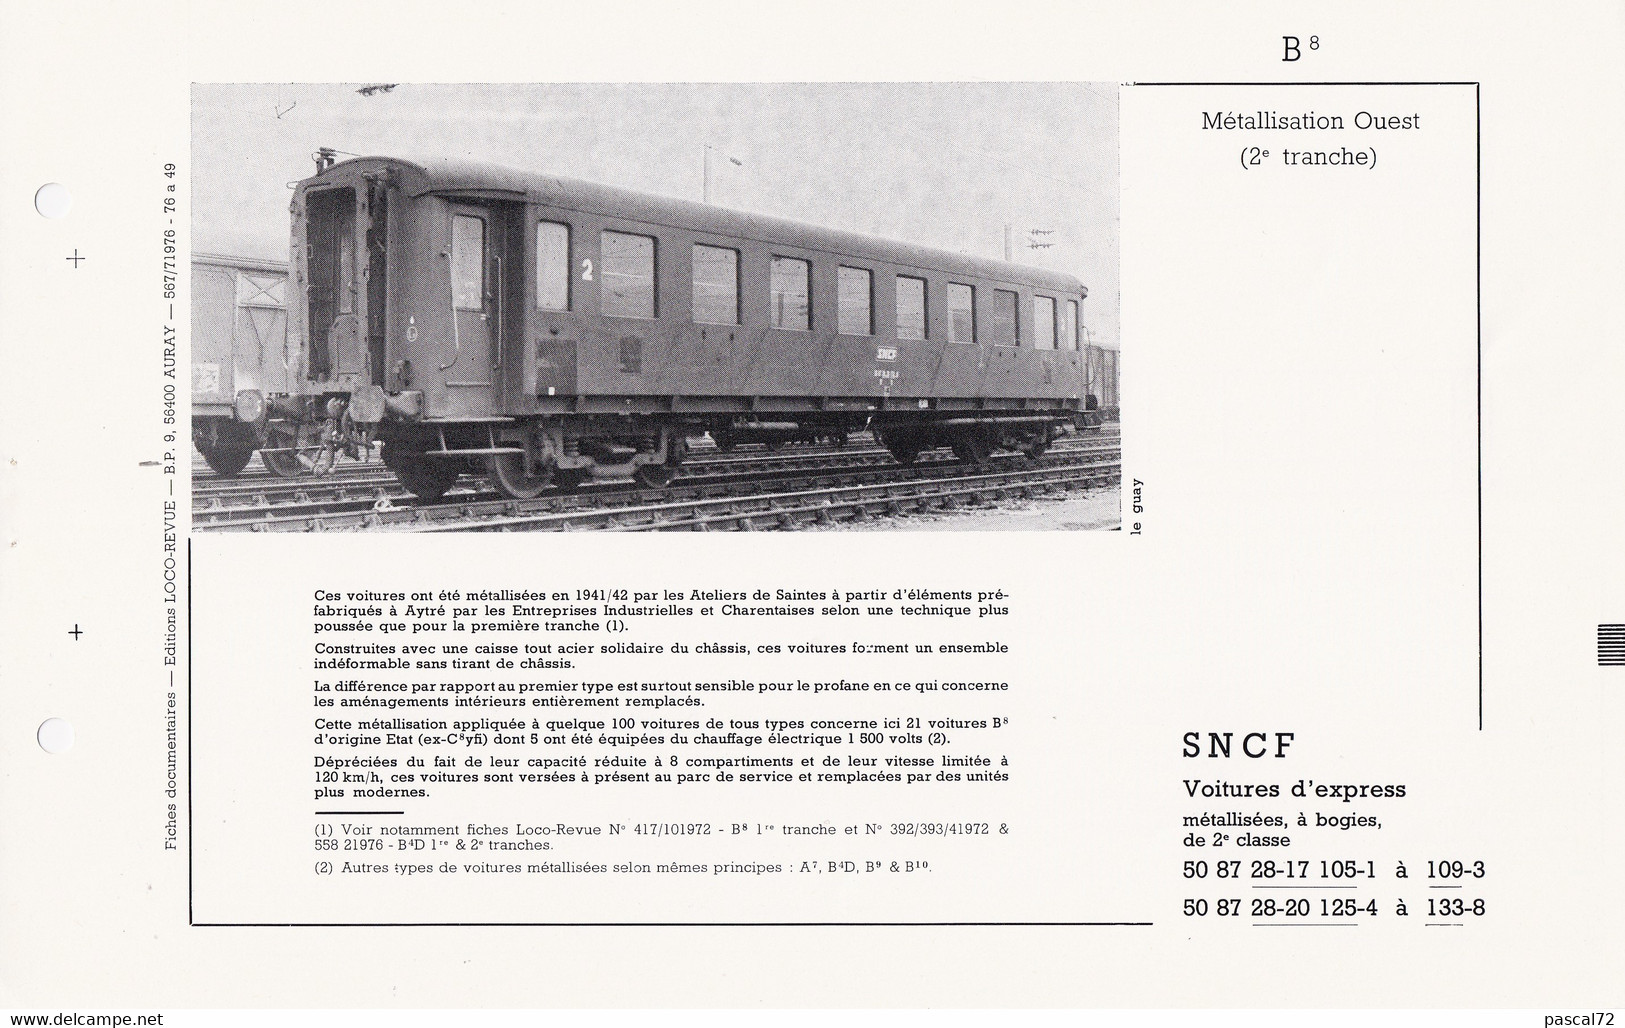 VOITURE B8 FICHE DOCUMENTAIRE LOCO REVUE N° 657 JUILLET 1976 - French